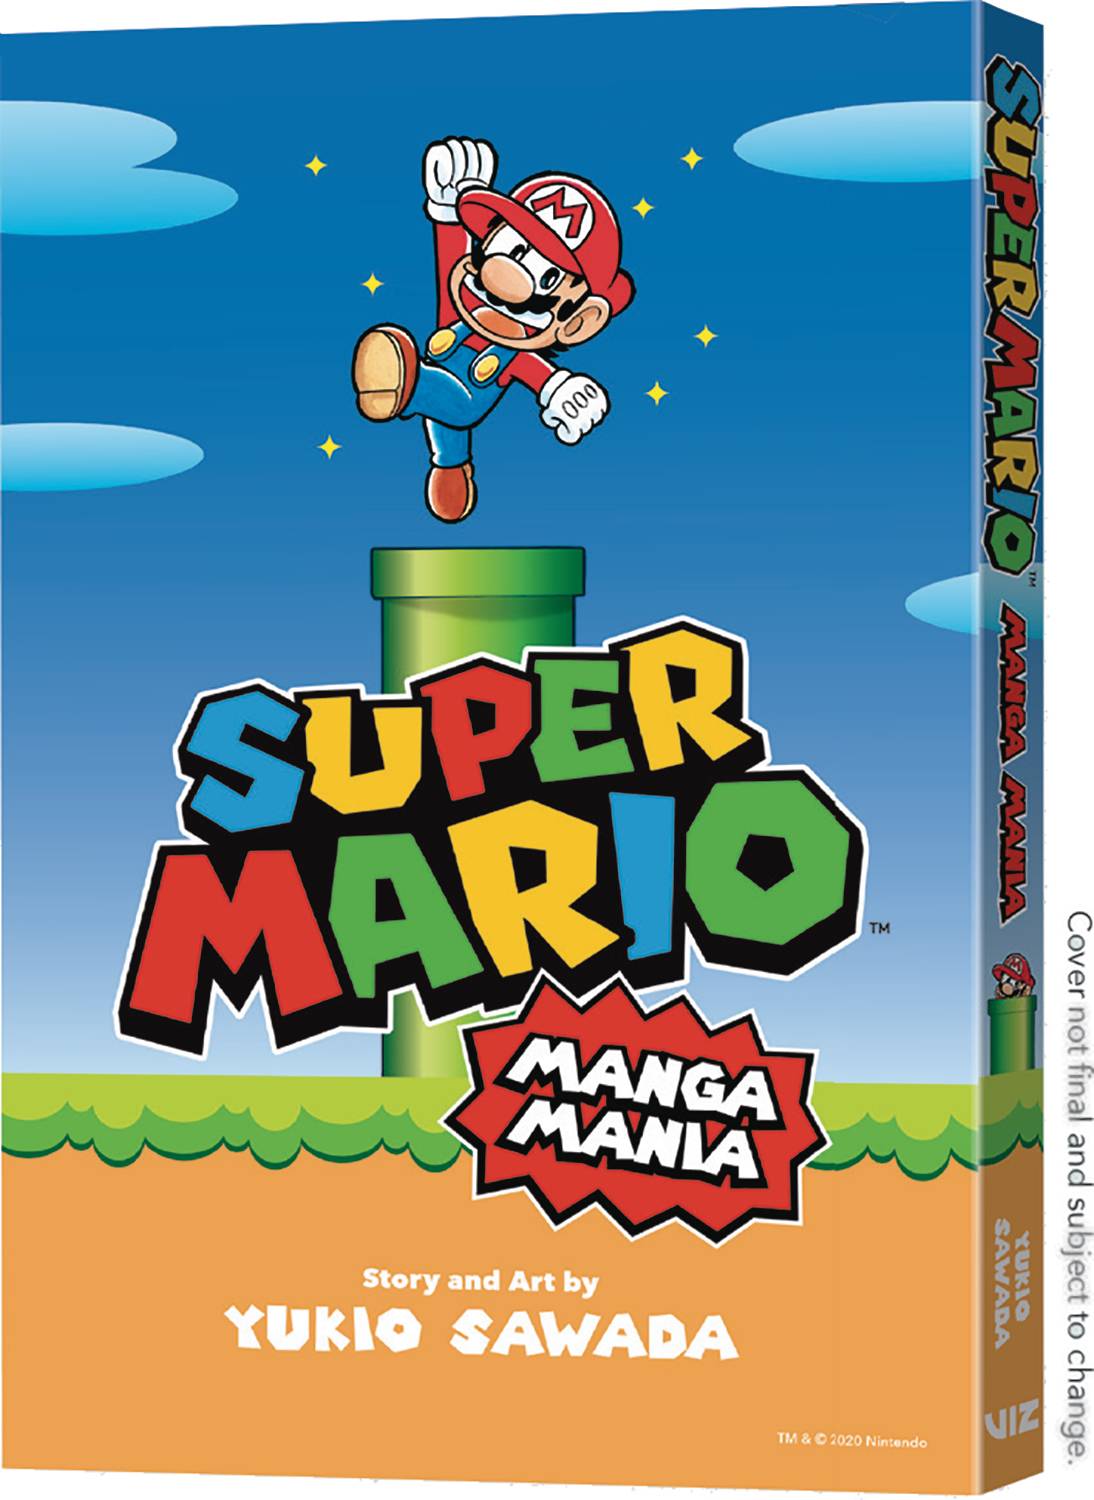 Super Mario Bros Manga Mania